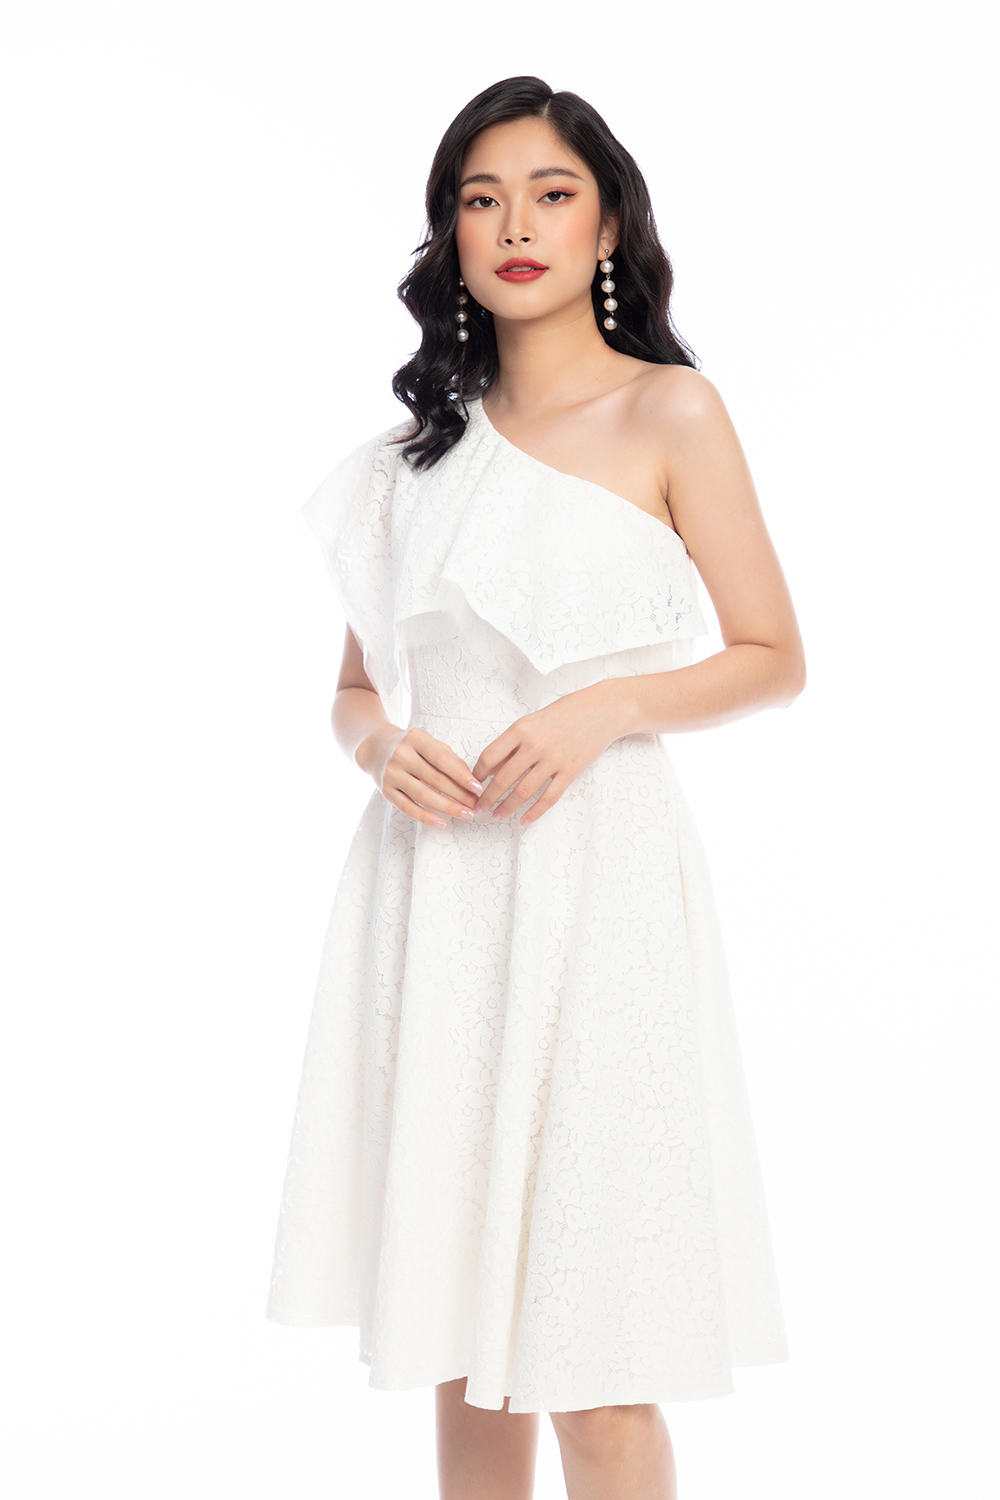 MAVEN - Váy trắng xoè tay bồng đính kết hoa Viola White Dress - Tìm Voucher